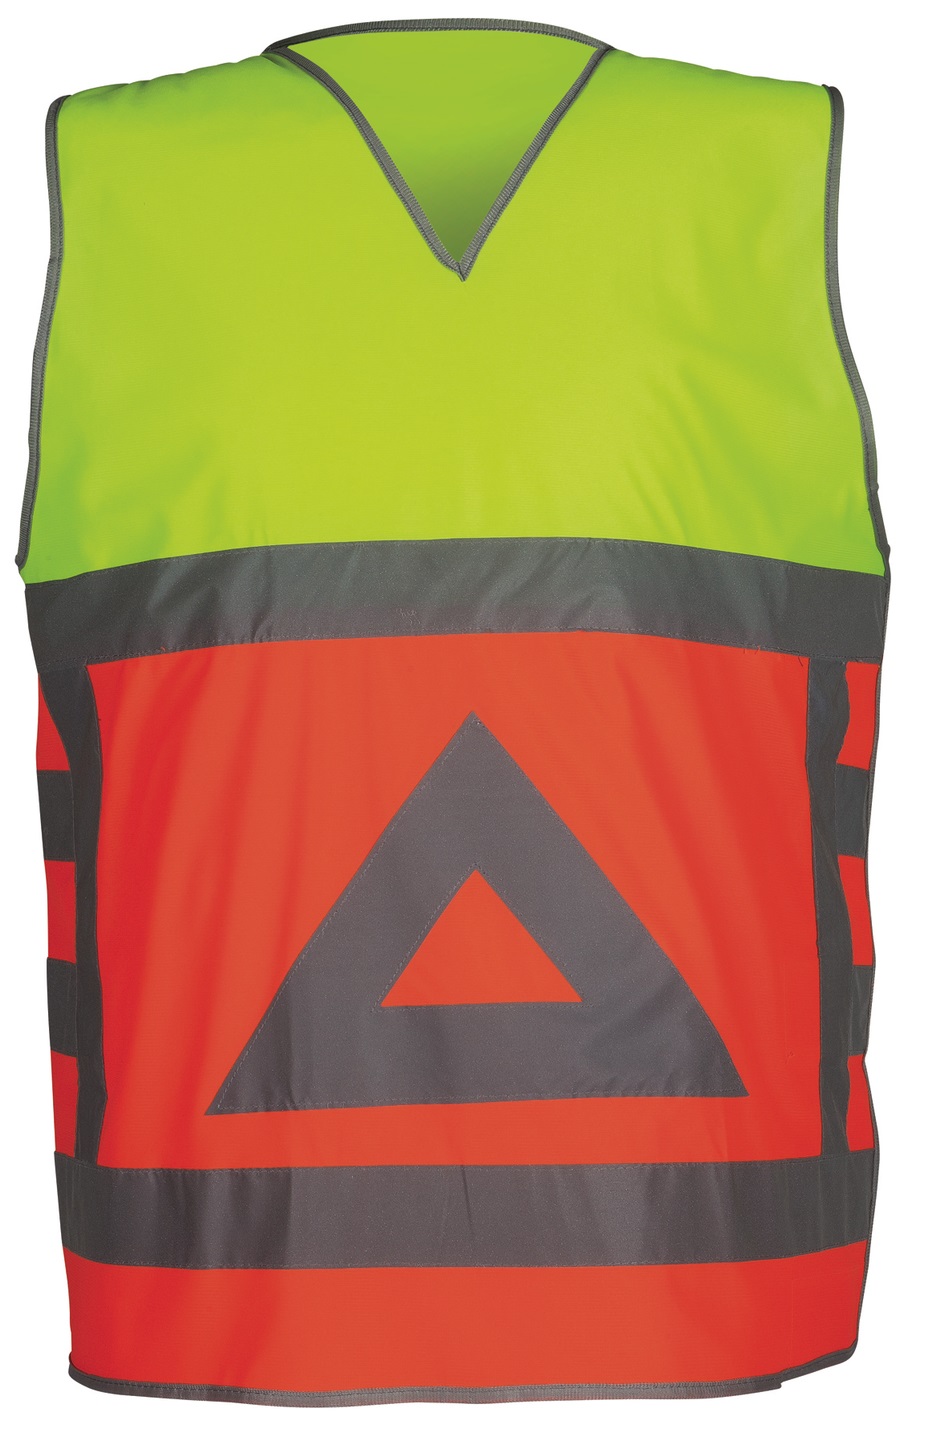 HAVEP-Warnschutz, Warn-Weste, Verkehrsüberwachung, 110-120 g/m², fluor-orange/ fluor-gelb